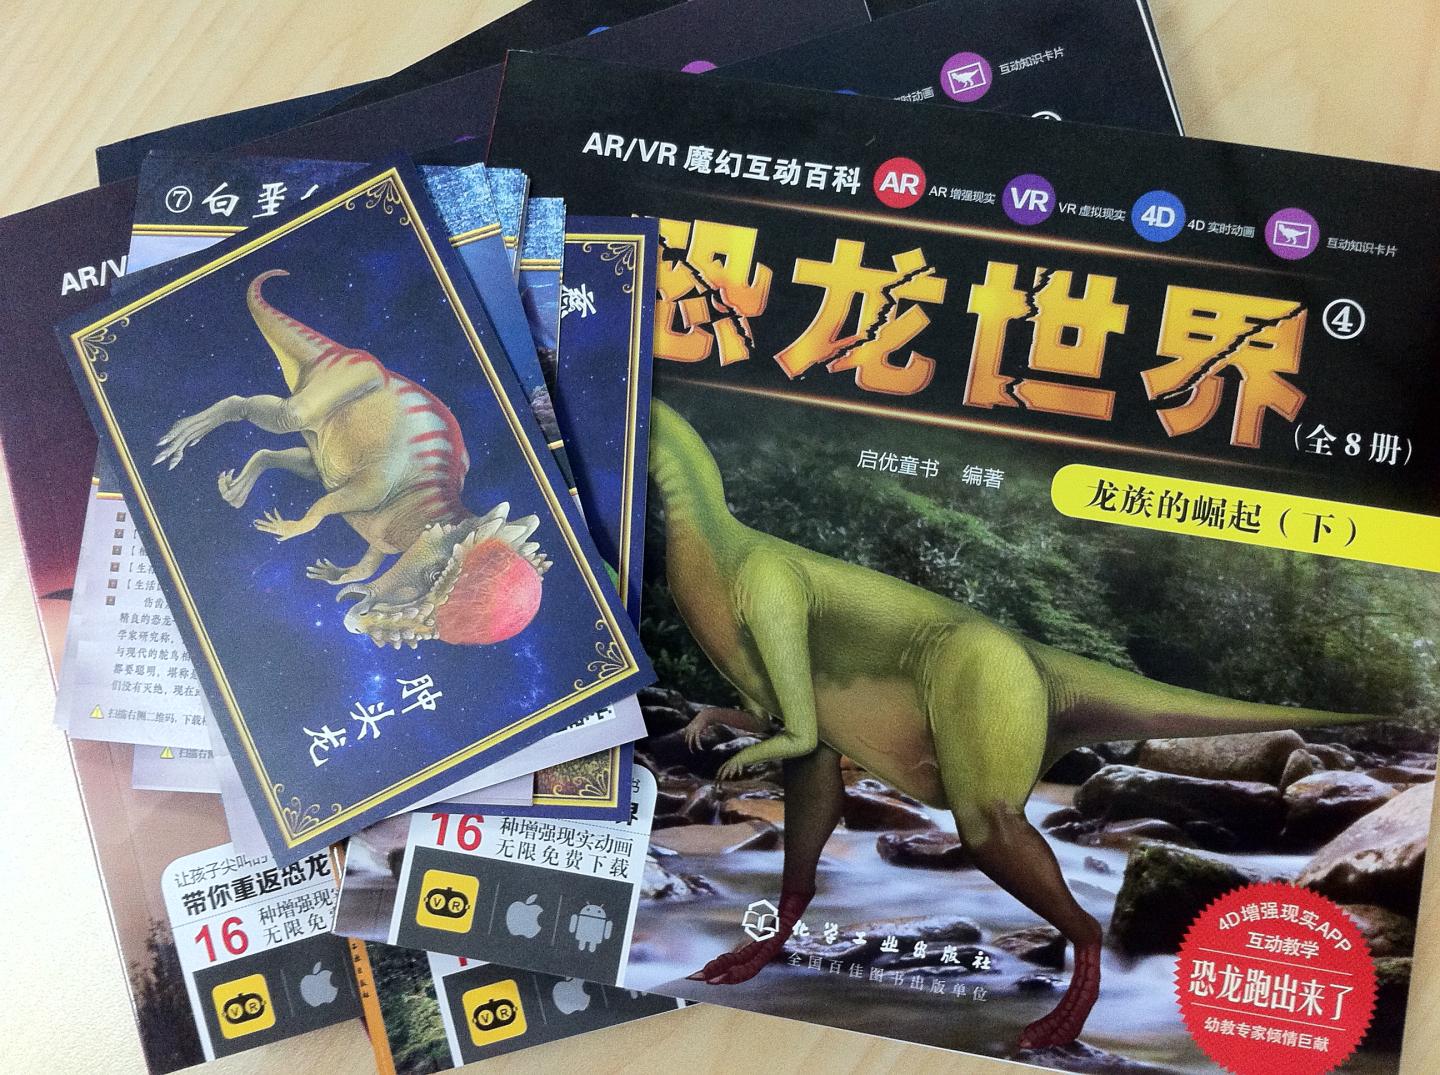 恐龙种类很丰富，是很好的科普书。孩子很喜欢恐龙，给买了一套，很实惠，居然有8本，还有卡片，让爸爸下载了AR带着她一起玩，很生动形象。